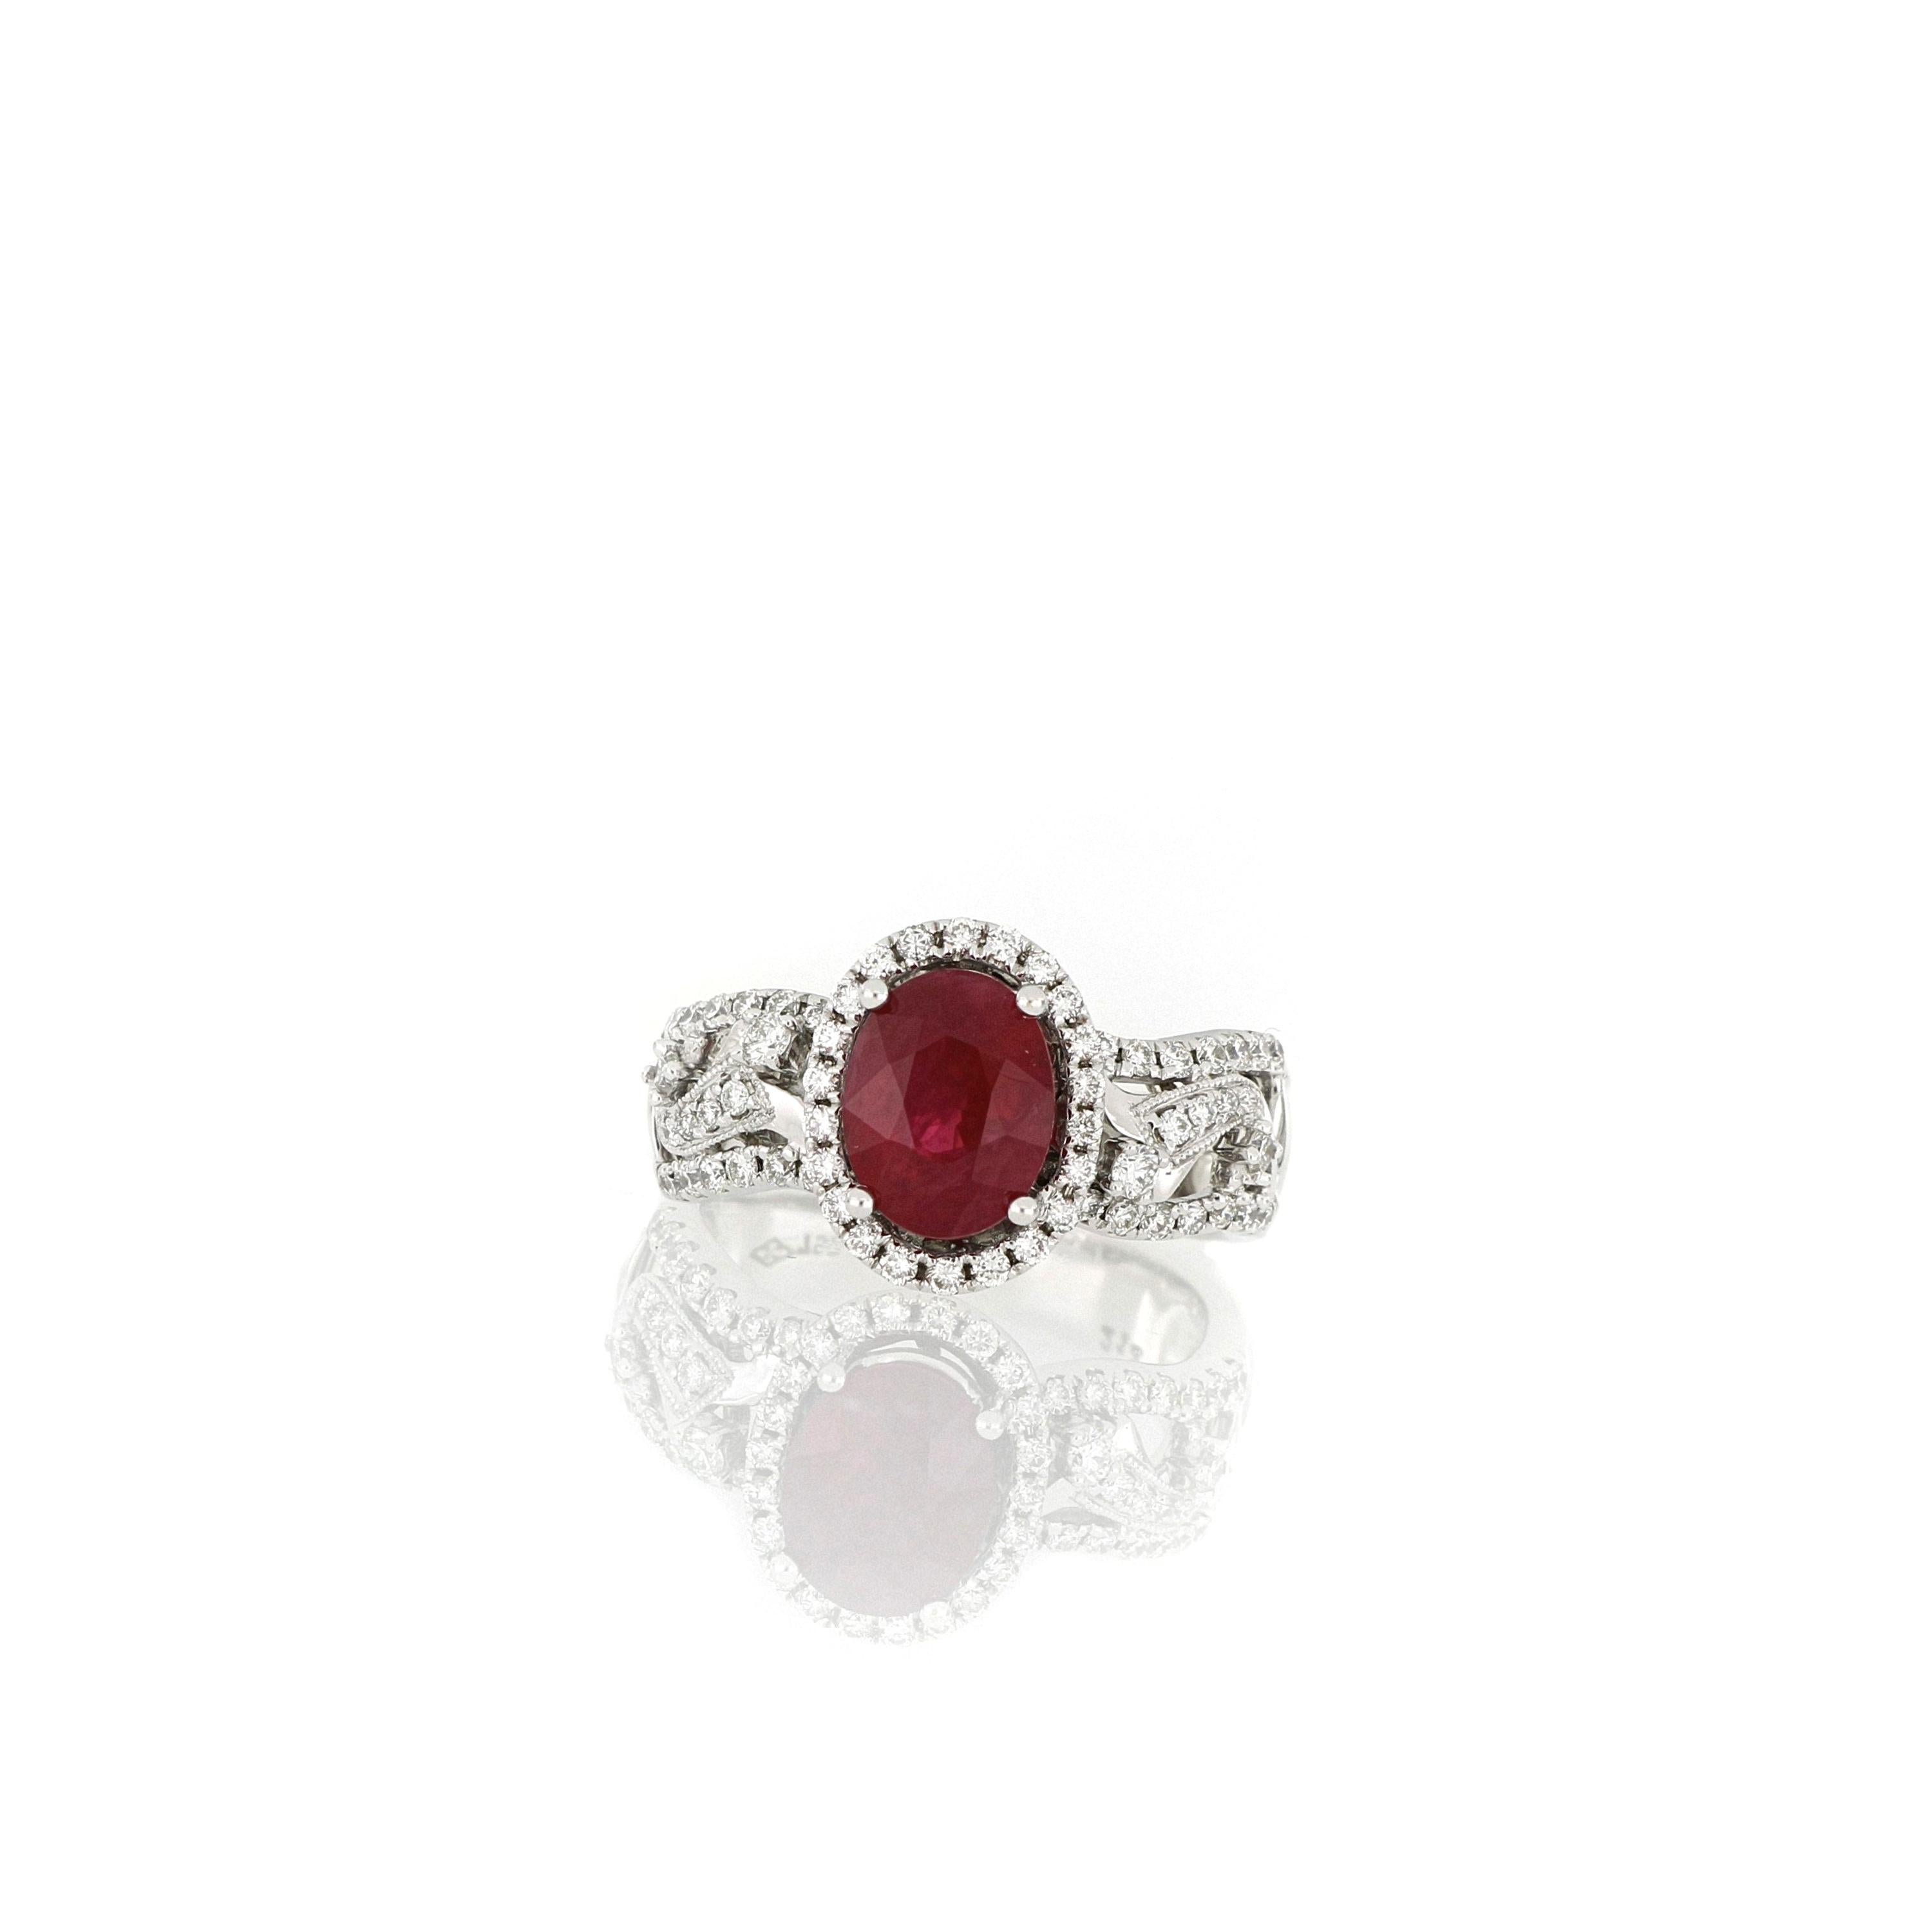 Ein fabelhafter Ring, besetzt mit einem natürlichen ovalen Rubin im Brillantschliff von leuchtend roter Farbe mit einem Gewicht von 2,12 ct, aus Burma, verziert mit Diamanten im Brillantschliff, die sich bis zu den Schultern erstrecken, mit einem